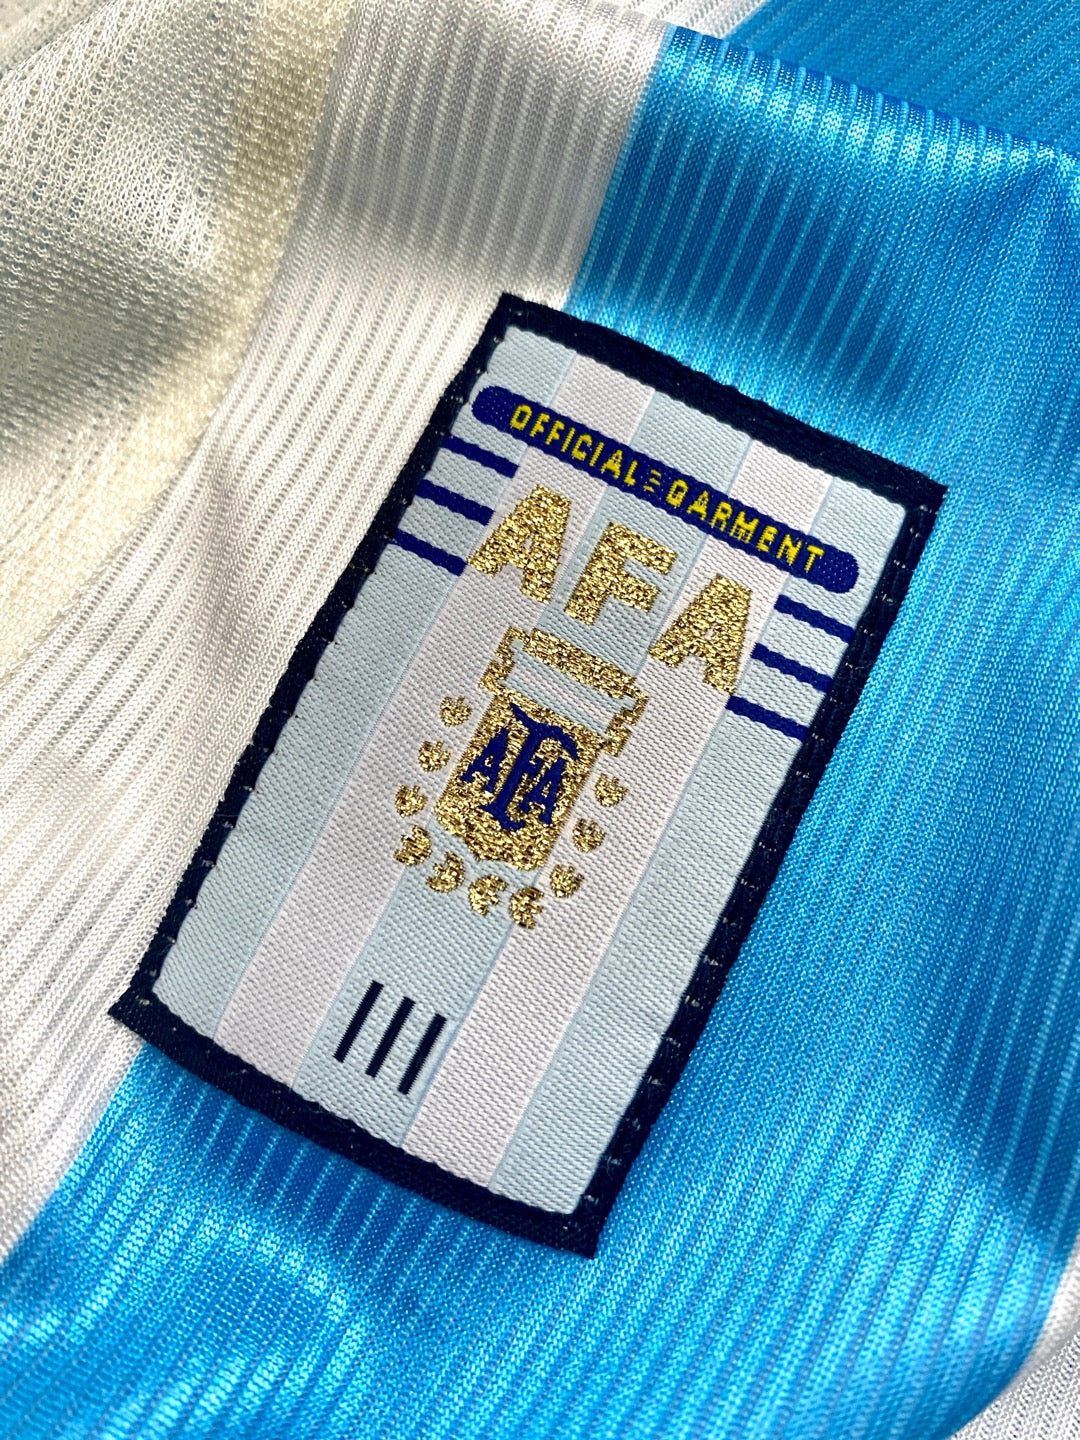 jersey argentina 1998 local detalle